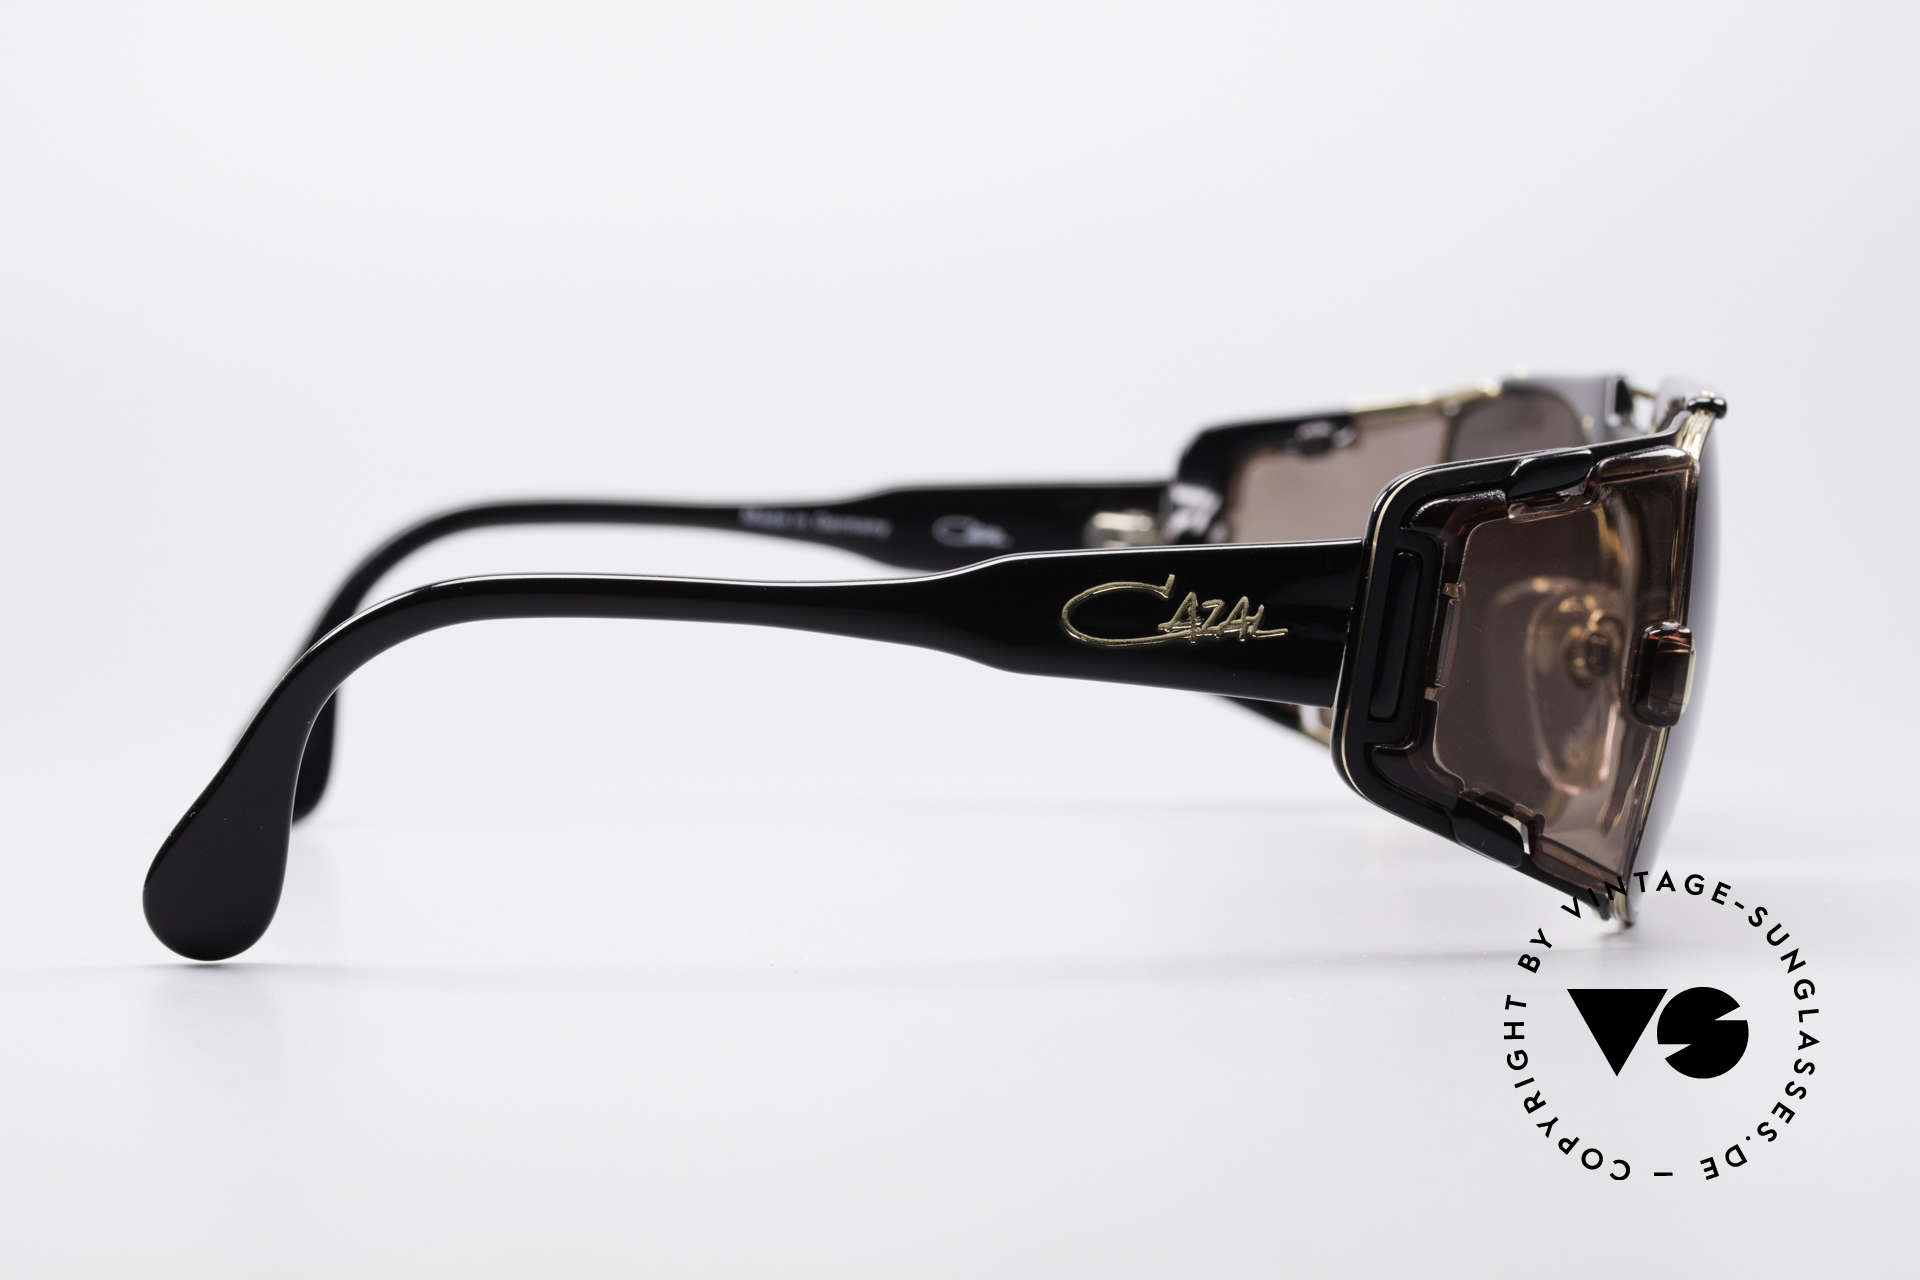 Cazal 963 Old School Hip Hop Brille, gerne als 'Old School' oder 'HipHop' Brille bezeichnet, Passend für Herren und Damen